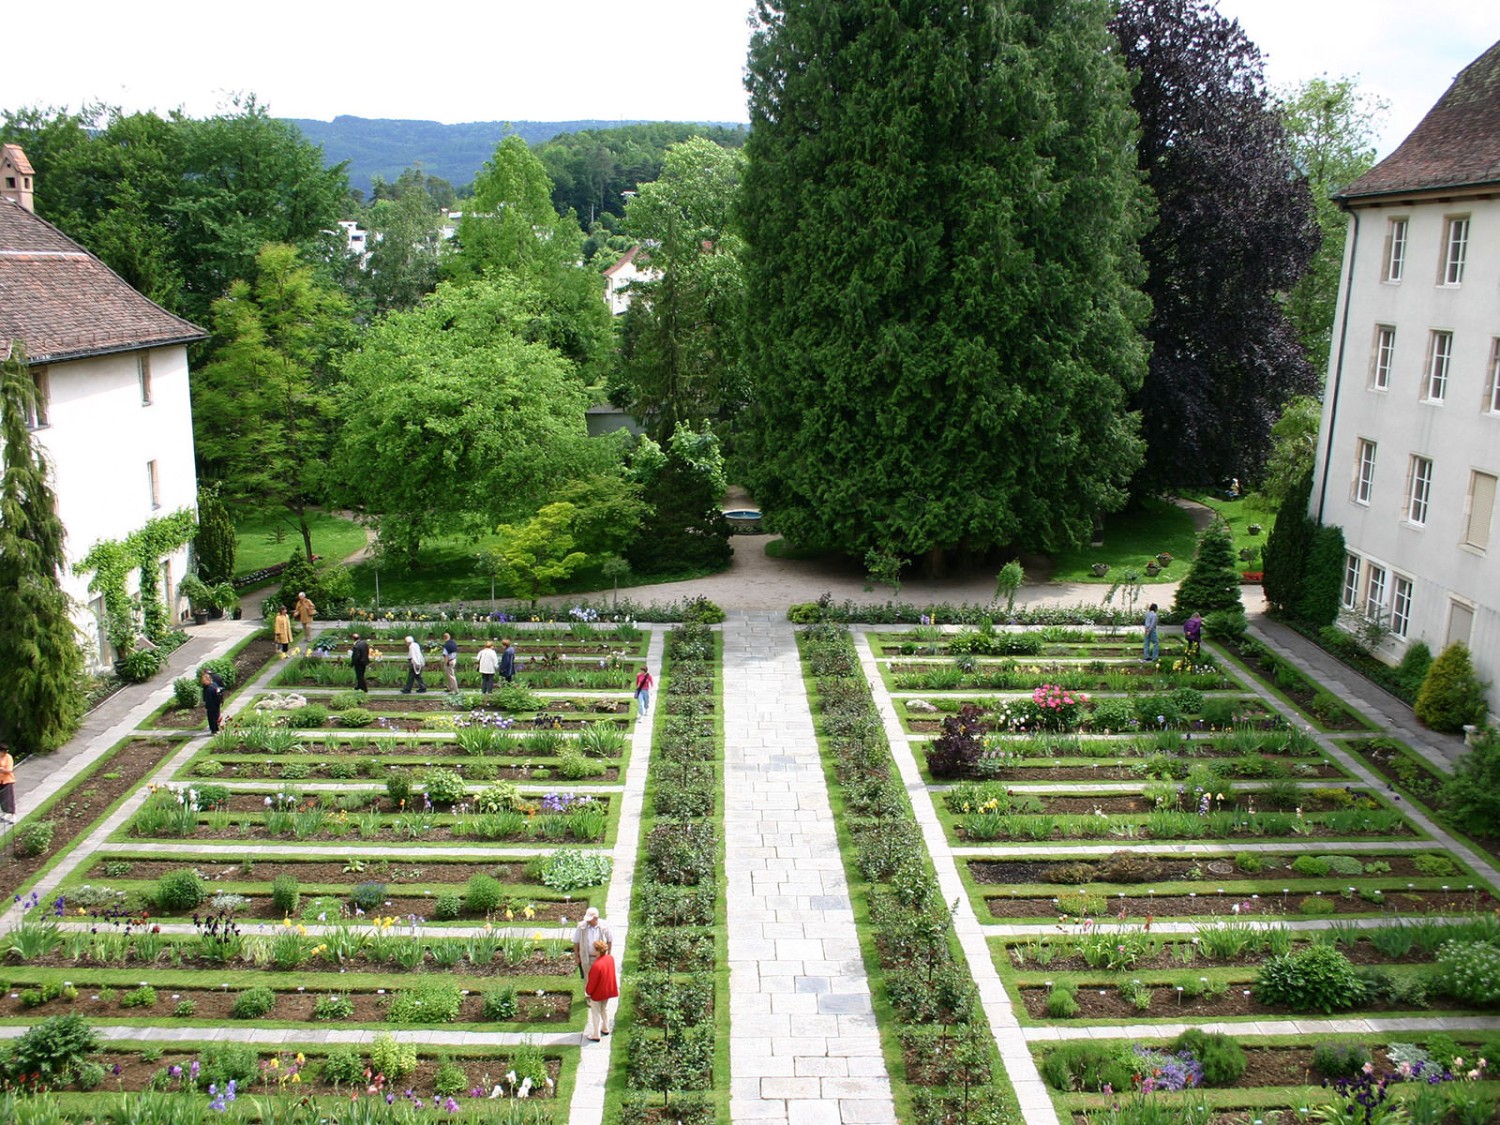 Die Rosenstöcke und die Pflanzensystematik in den Beeten begeistern. Bild: Jura Tourisme